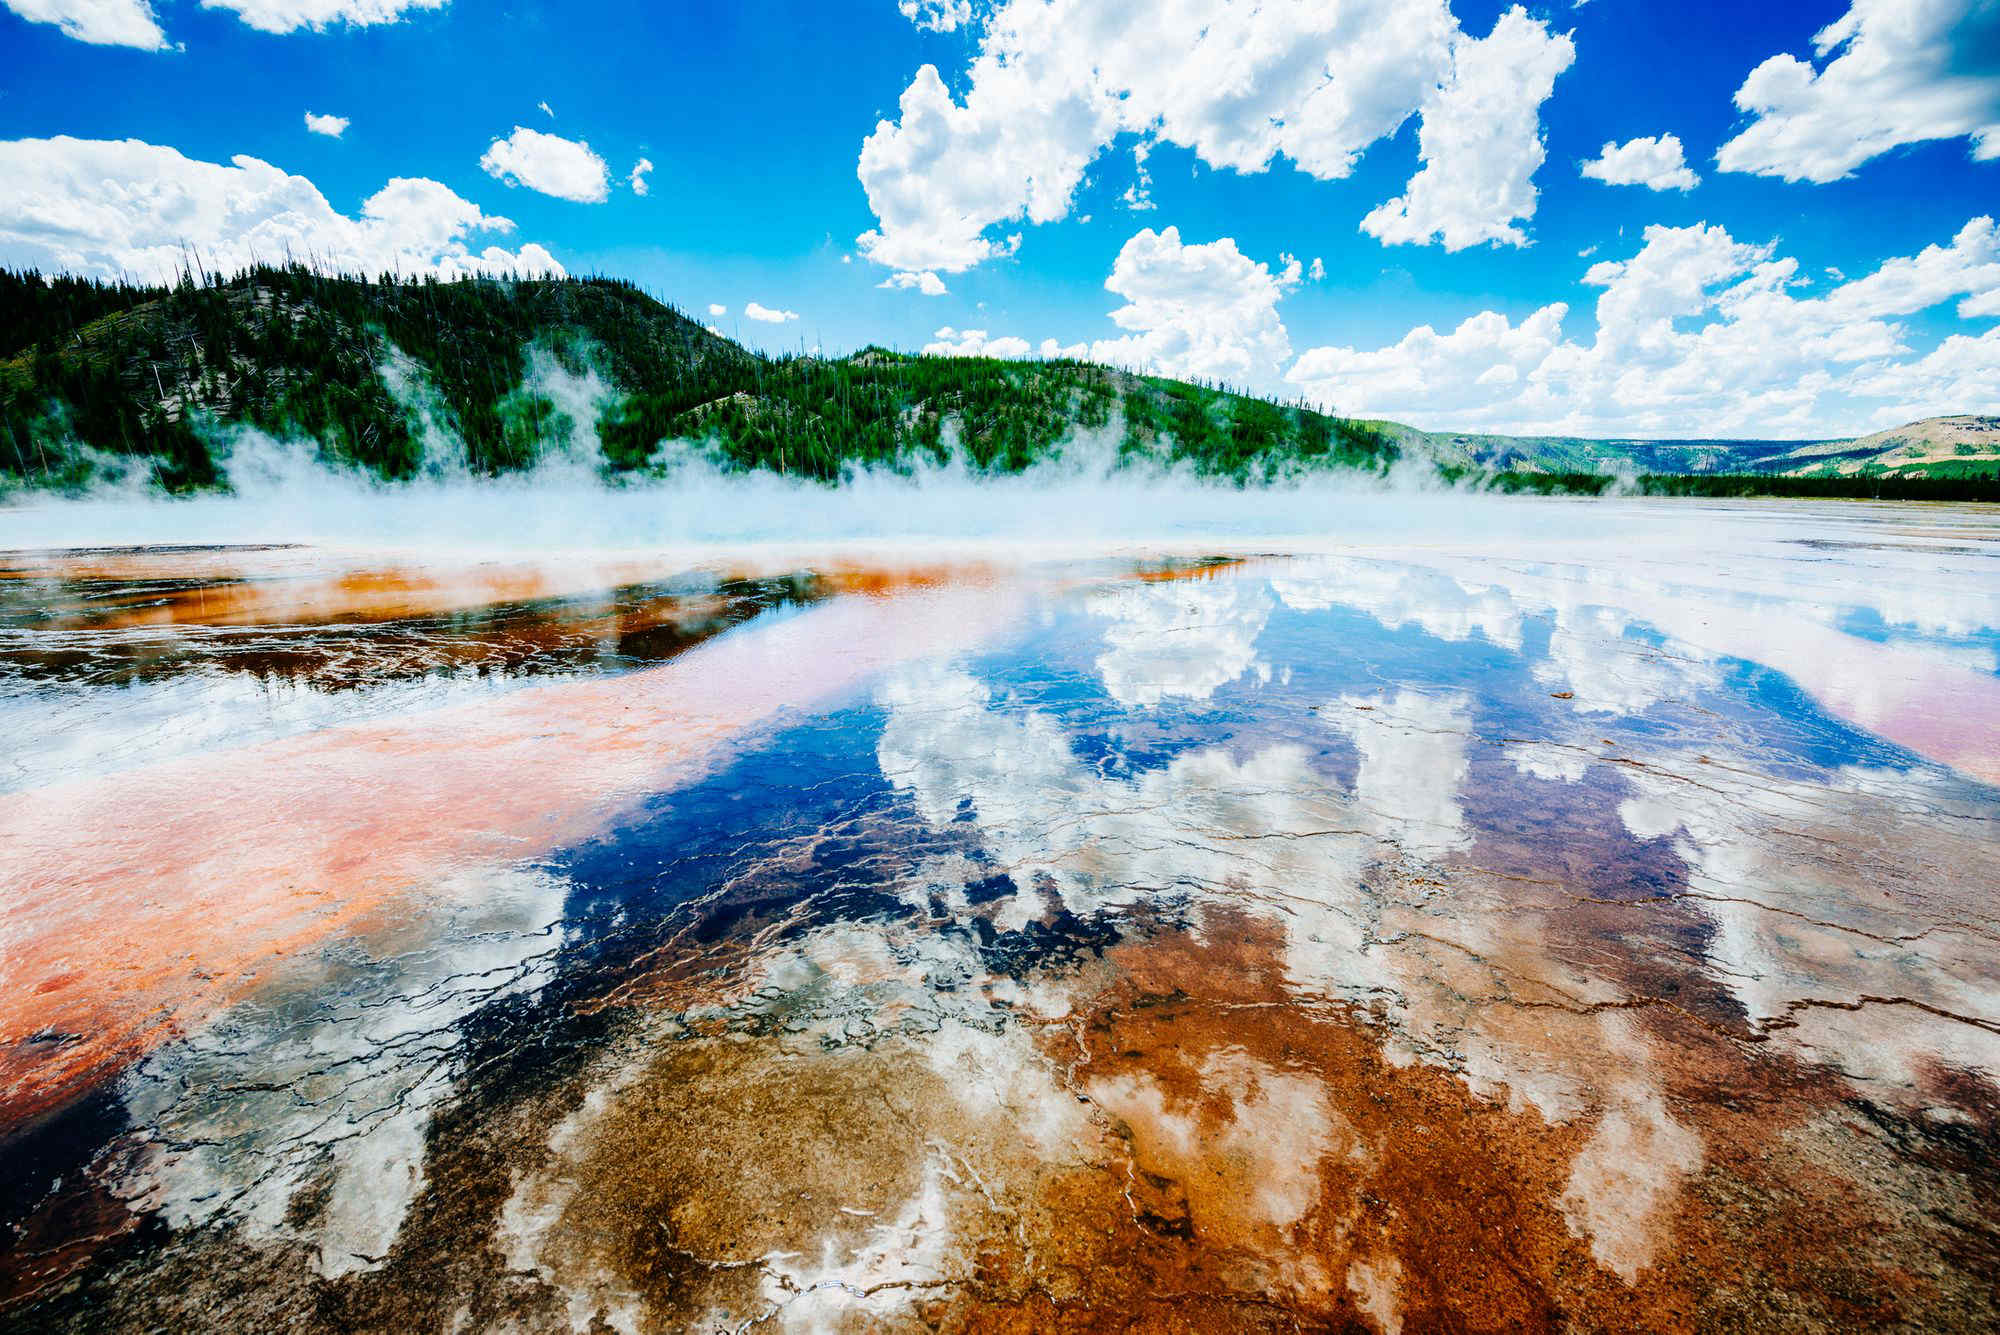 Yellowstone offre un pass annuale: sarà valido però dall’anno 2172